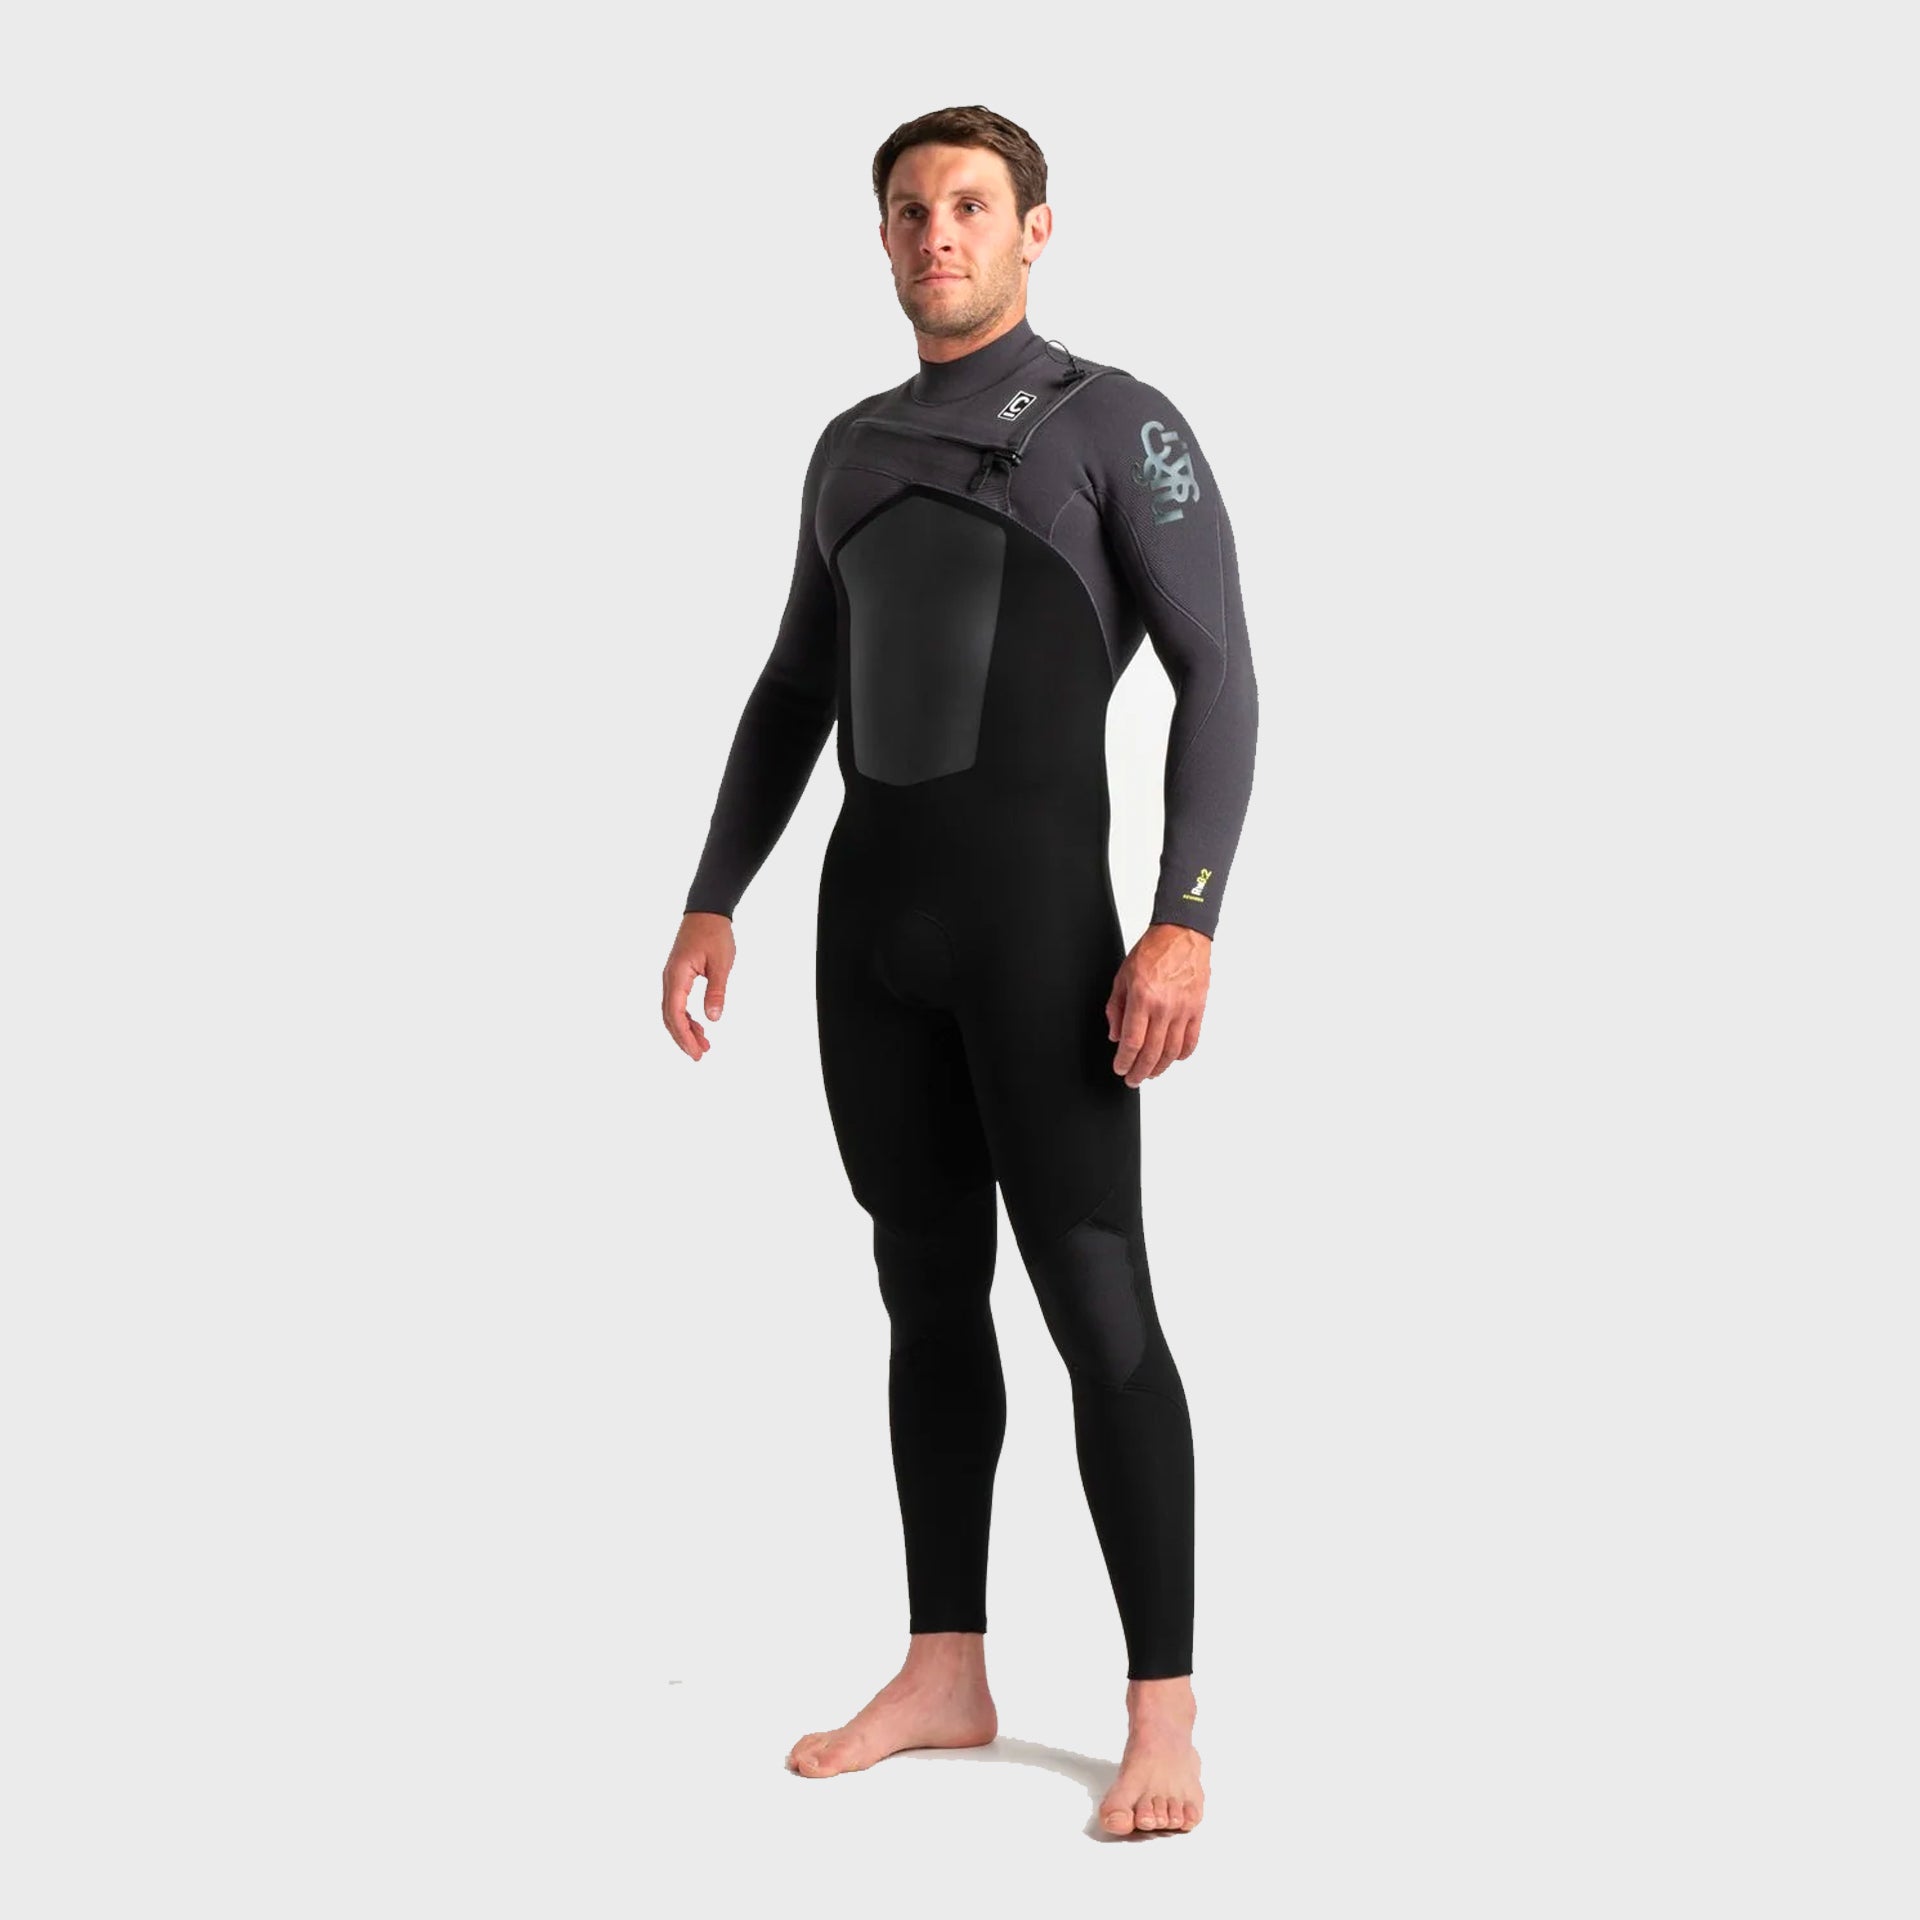 C-Skins Rewired 3:2mm Mens Chest Zip Wetsuit - Black Meteor - ManGo Surfing